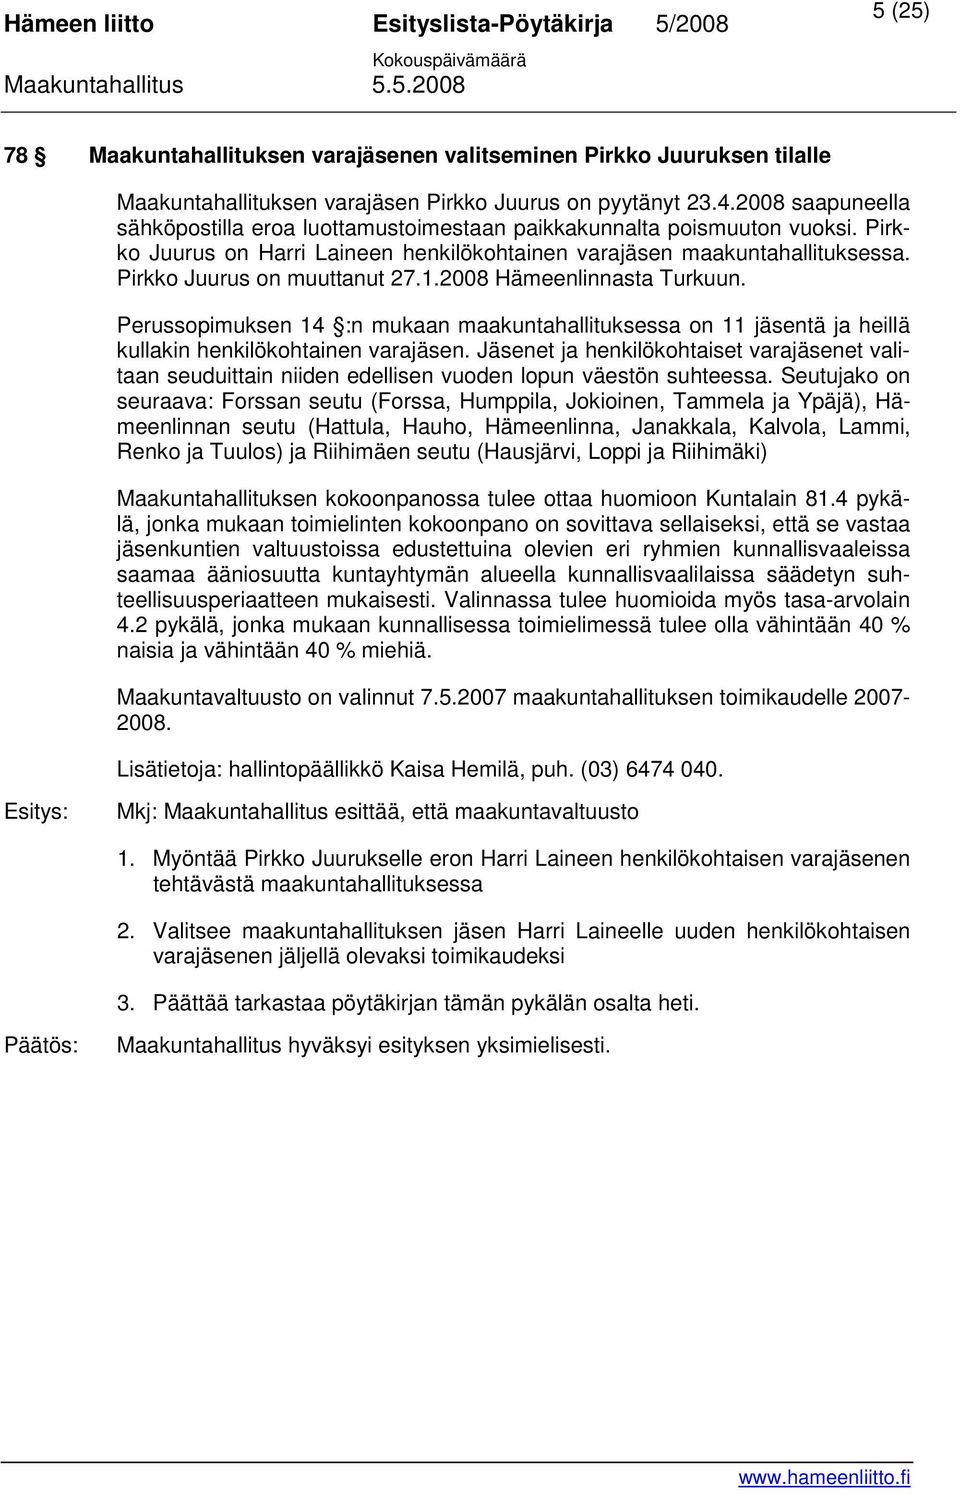 Pirkko Juurus on muuttanut 27.1.2008 Hämeenlinnasta Turkuun. Perussopimuksen 14 :n mukaan maakuntahallituksessa on 11 jäsentä ja heillä kullakin henkilökohtainen varajäsen.